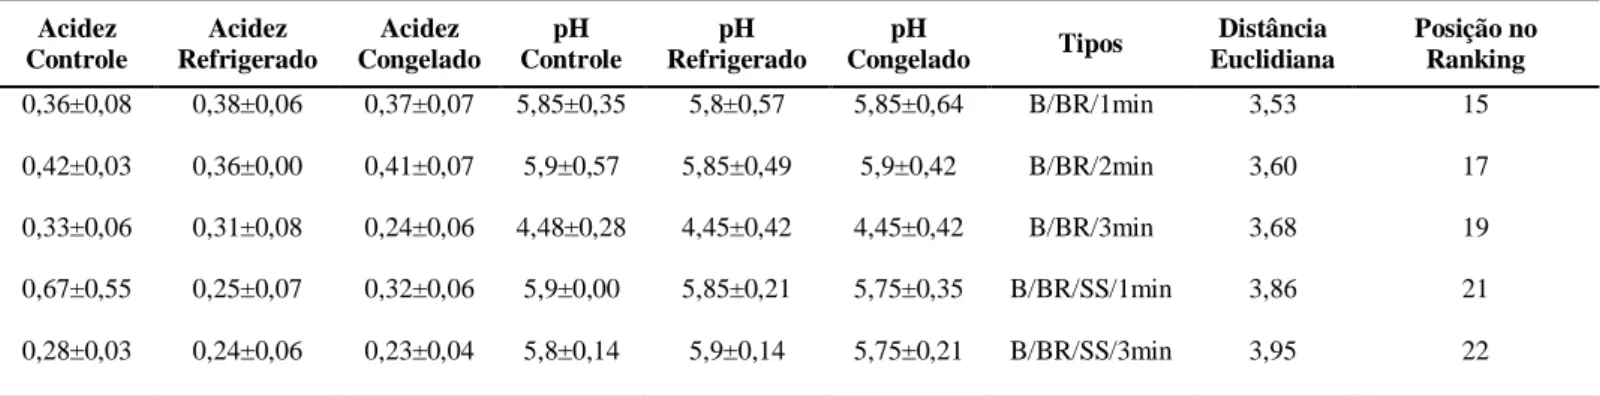 Tabela 2: Resultados de pH, acidez e Knn dos tratamentos para a Banana (B)   Acidez  Controle  Acidez  Refrigerado  Acidez  Congelado  pH  Controle  pH  Refrigerado  pH 